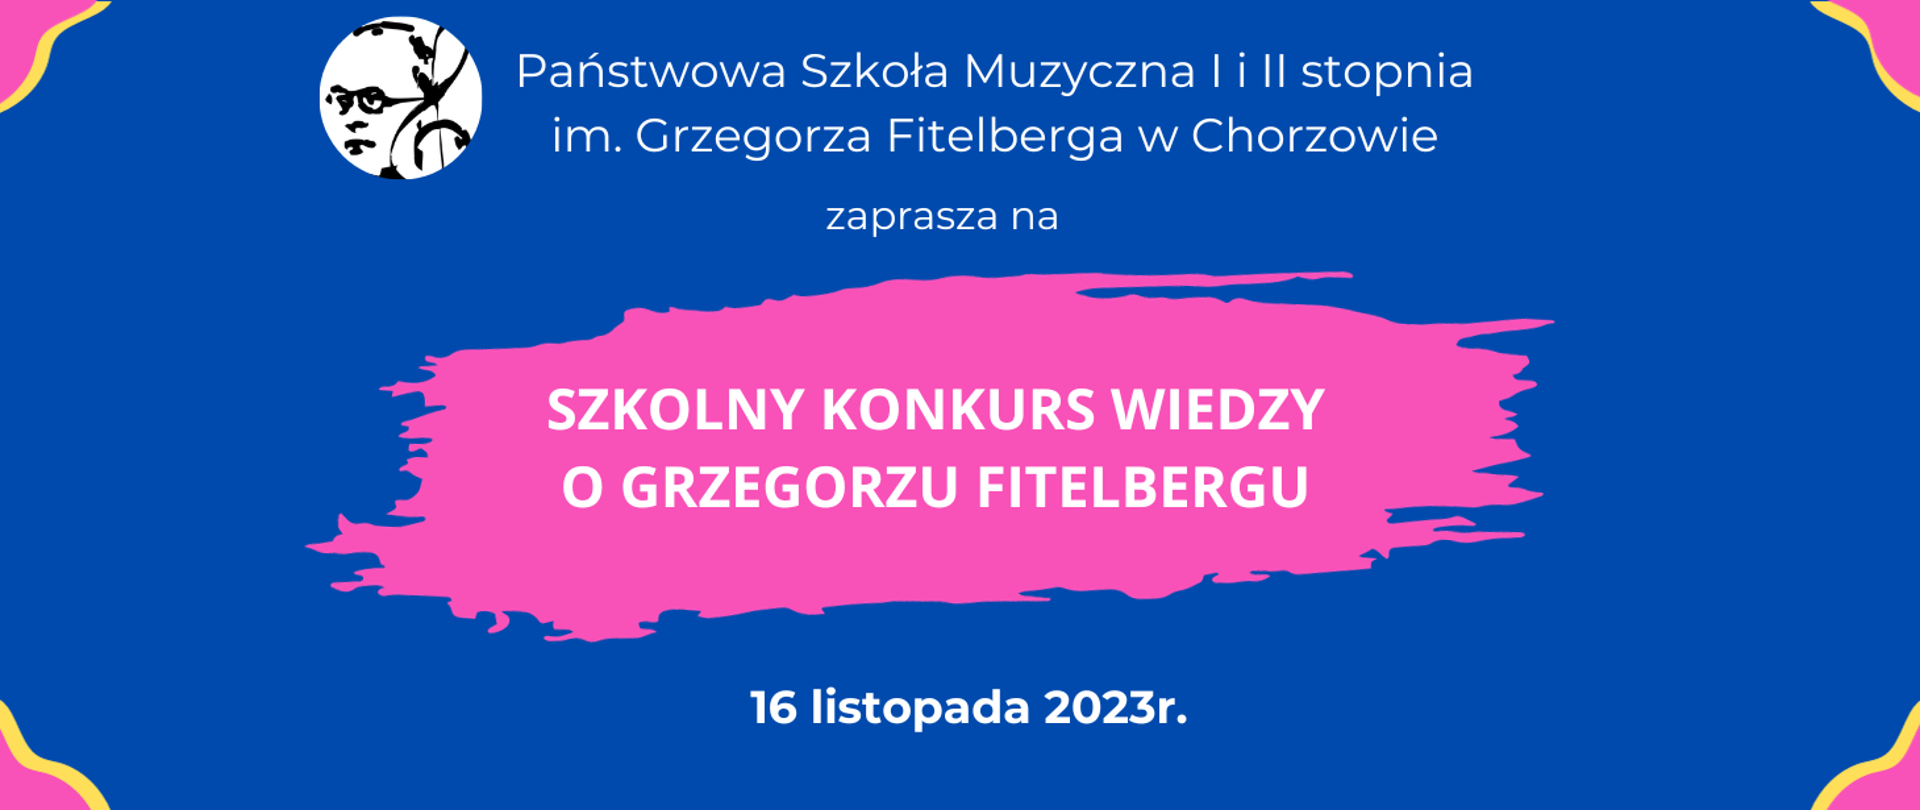 Szkolny konkurs wiedzy o Grzegorzu Fitelbergu 16 listopada 2023